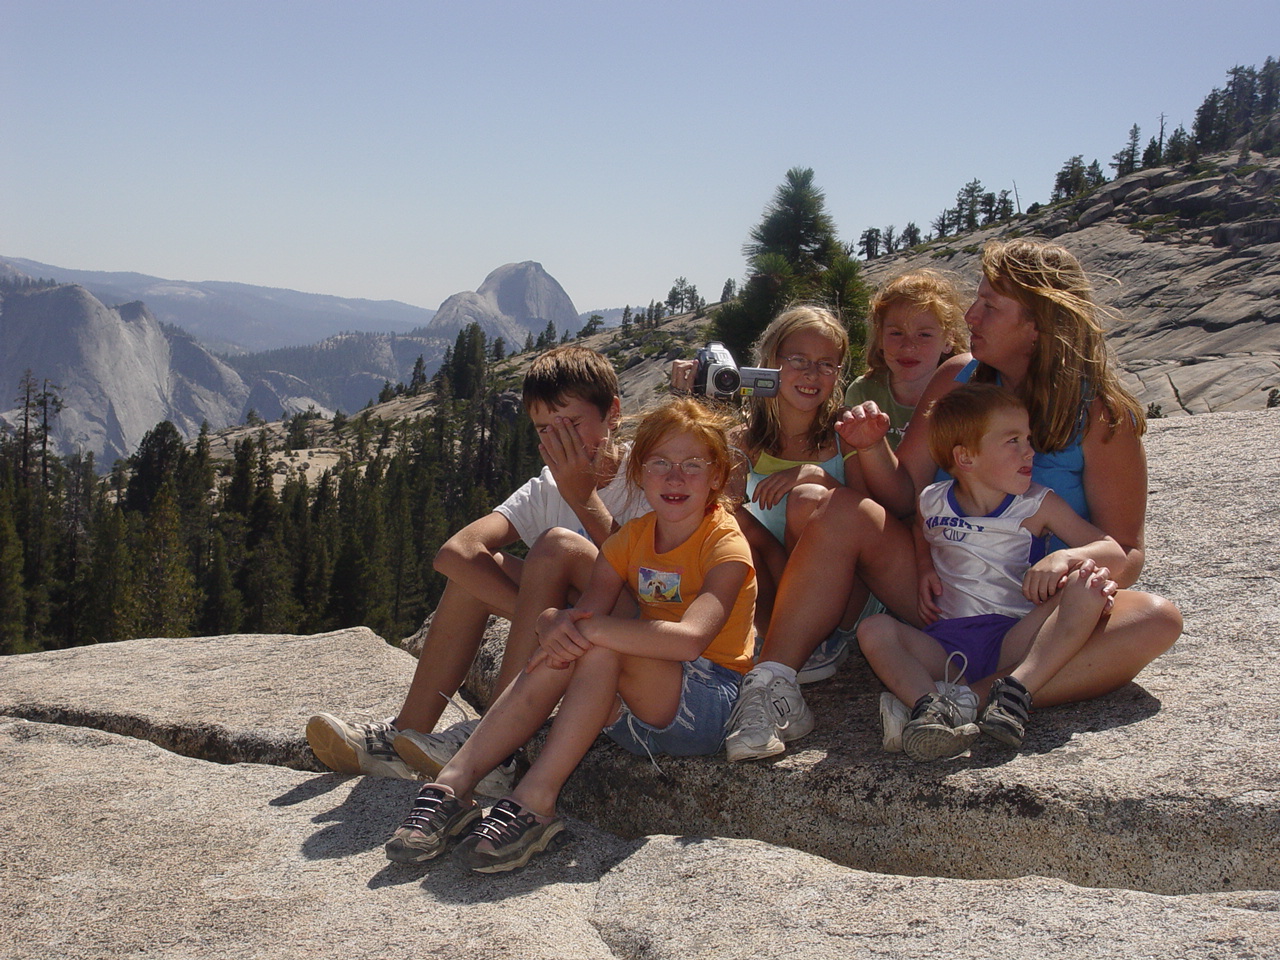 The view at Yosemite